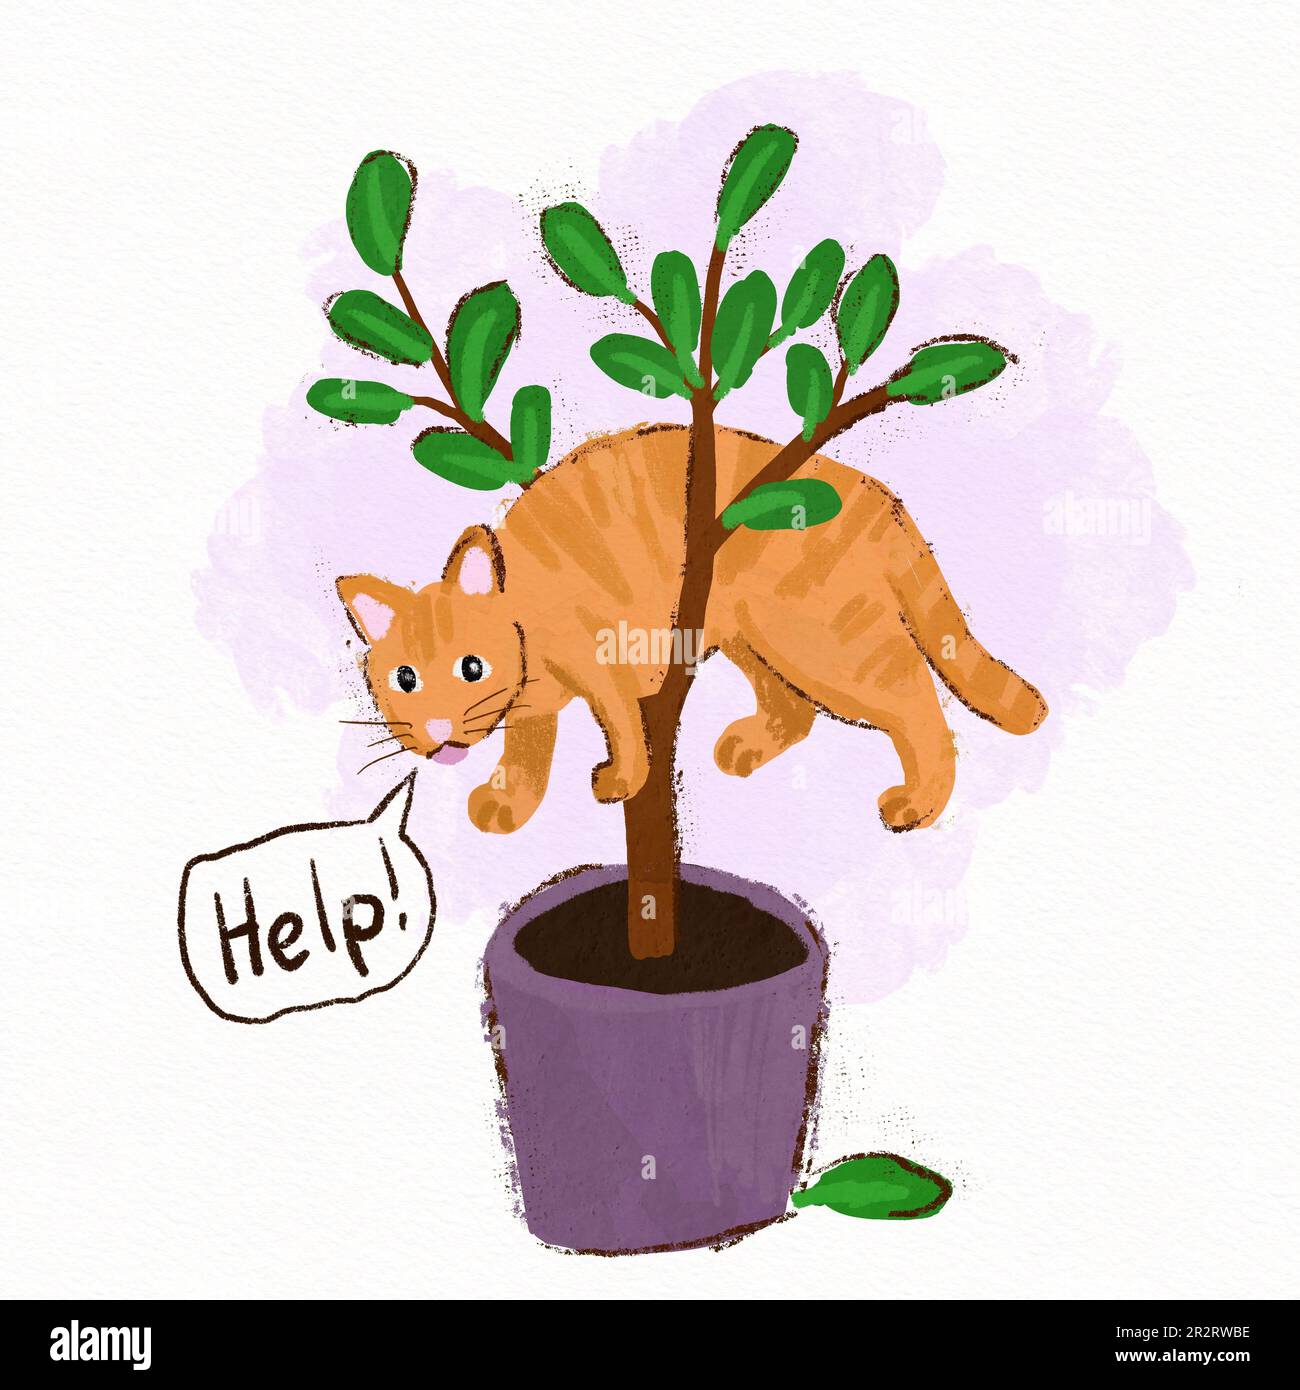 Handgezogene Andeutungen mit roter Katze, steckende Blumen Ficus Hauspflanze, helfen Unfug lustig. Heimtier Katze niedliches Design Posterkarte, trendige Kunst im lockeren gemalten Stil, Geschenk für Katzenliebhaber Katze Stockfoto